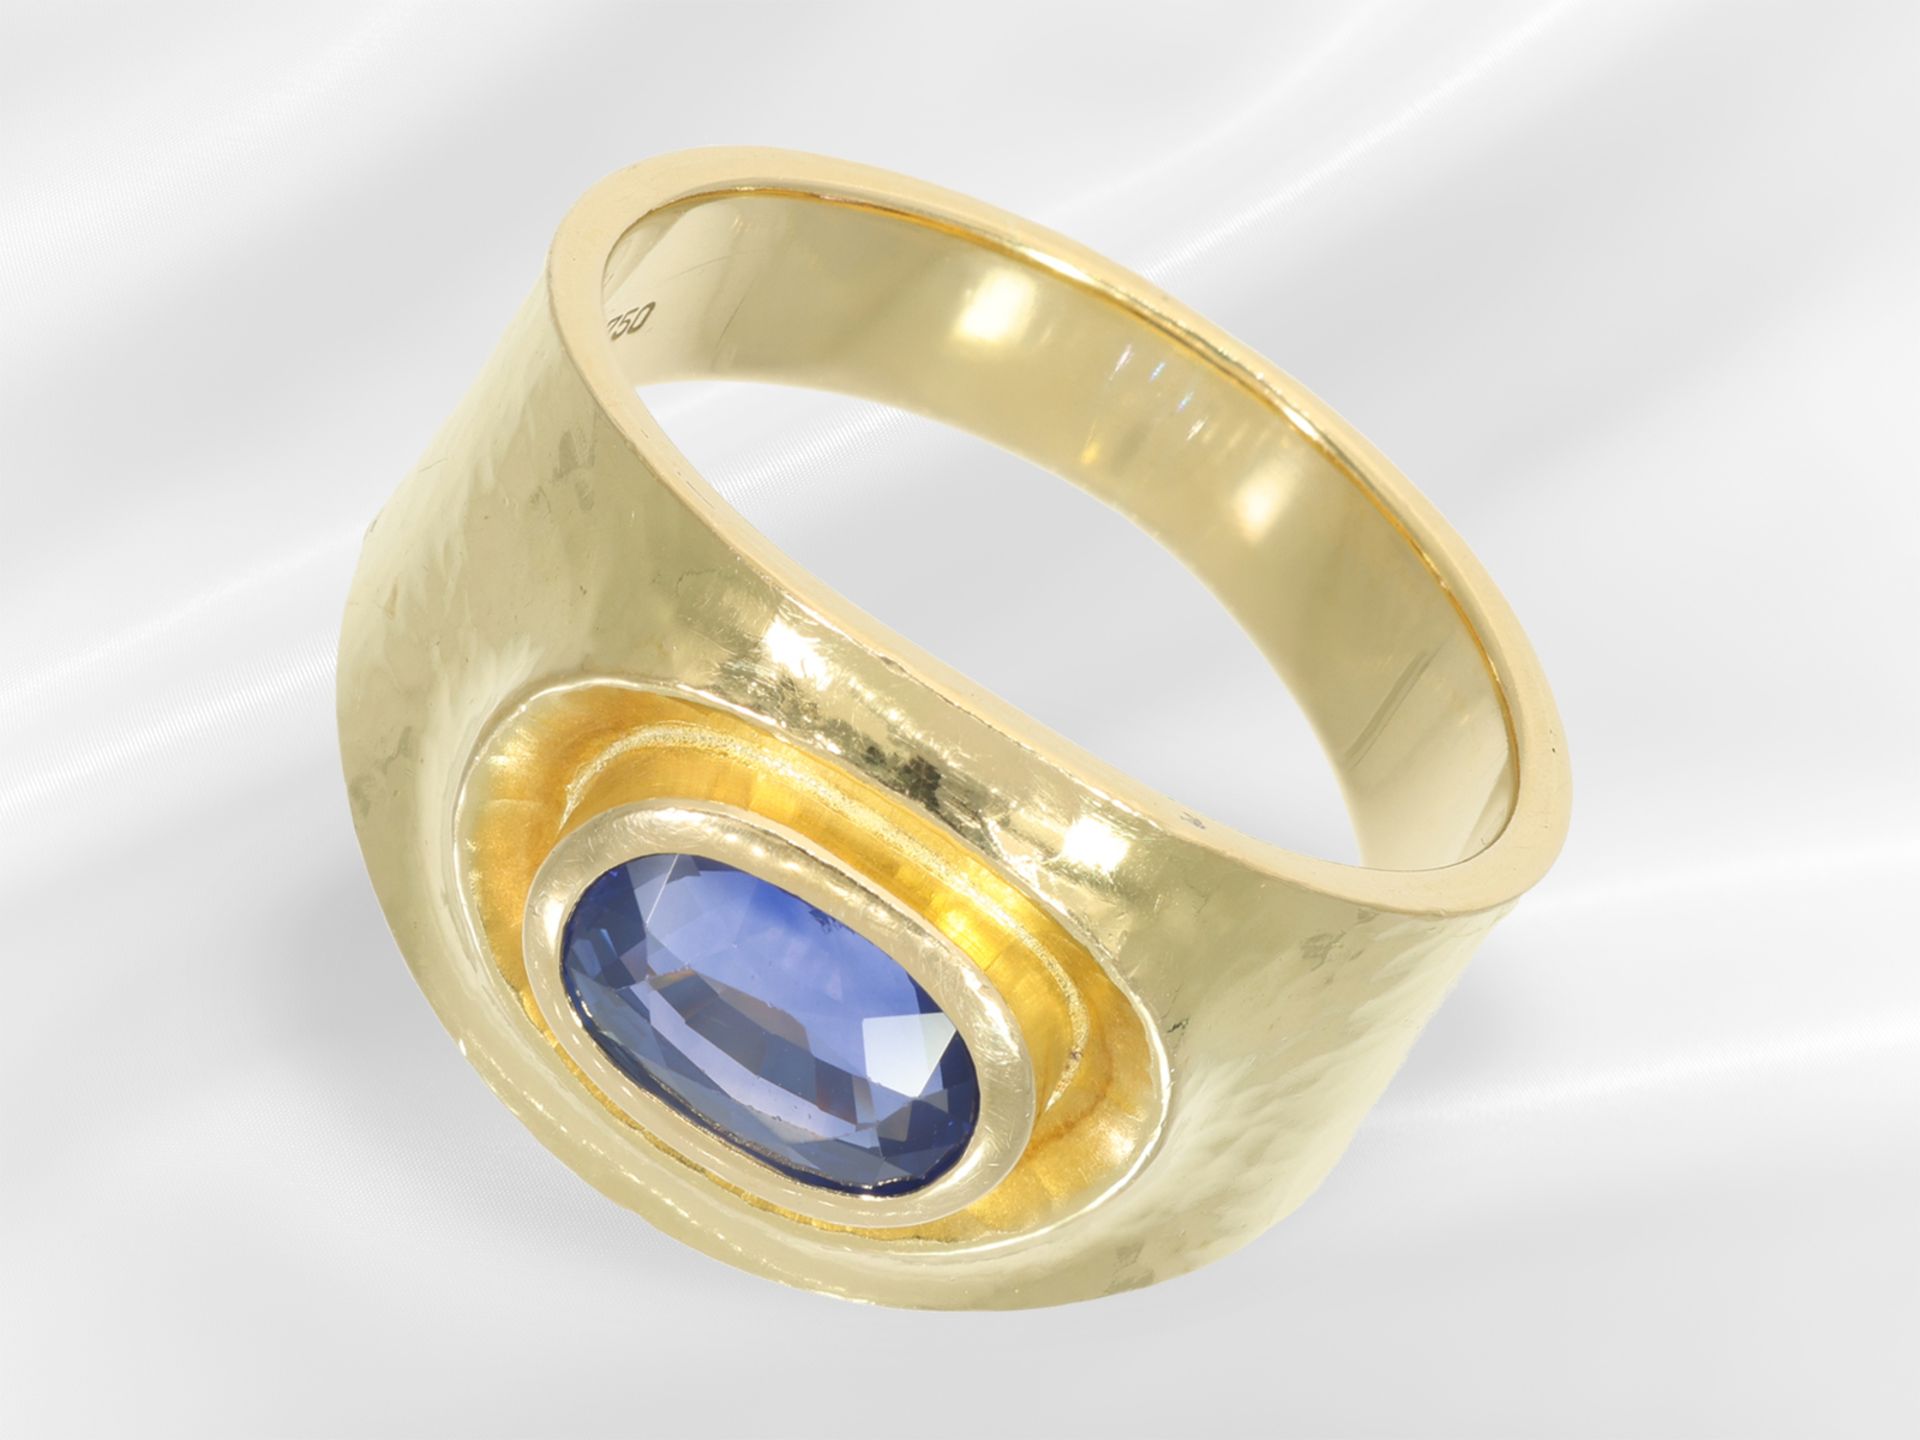 Ring: sehr schöner hochwertiger Saphirring, ca. 2ct